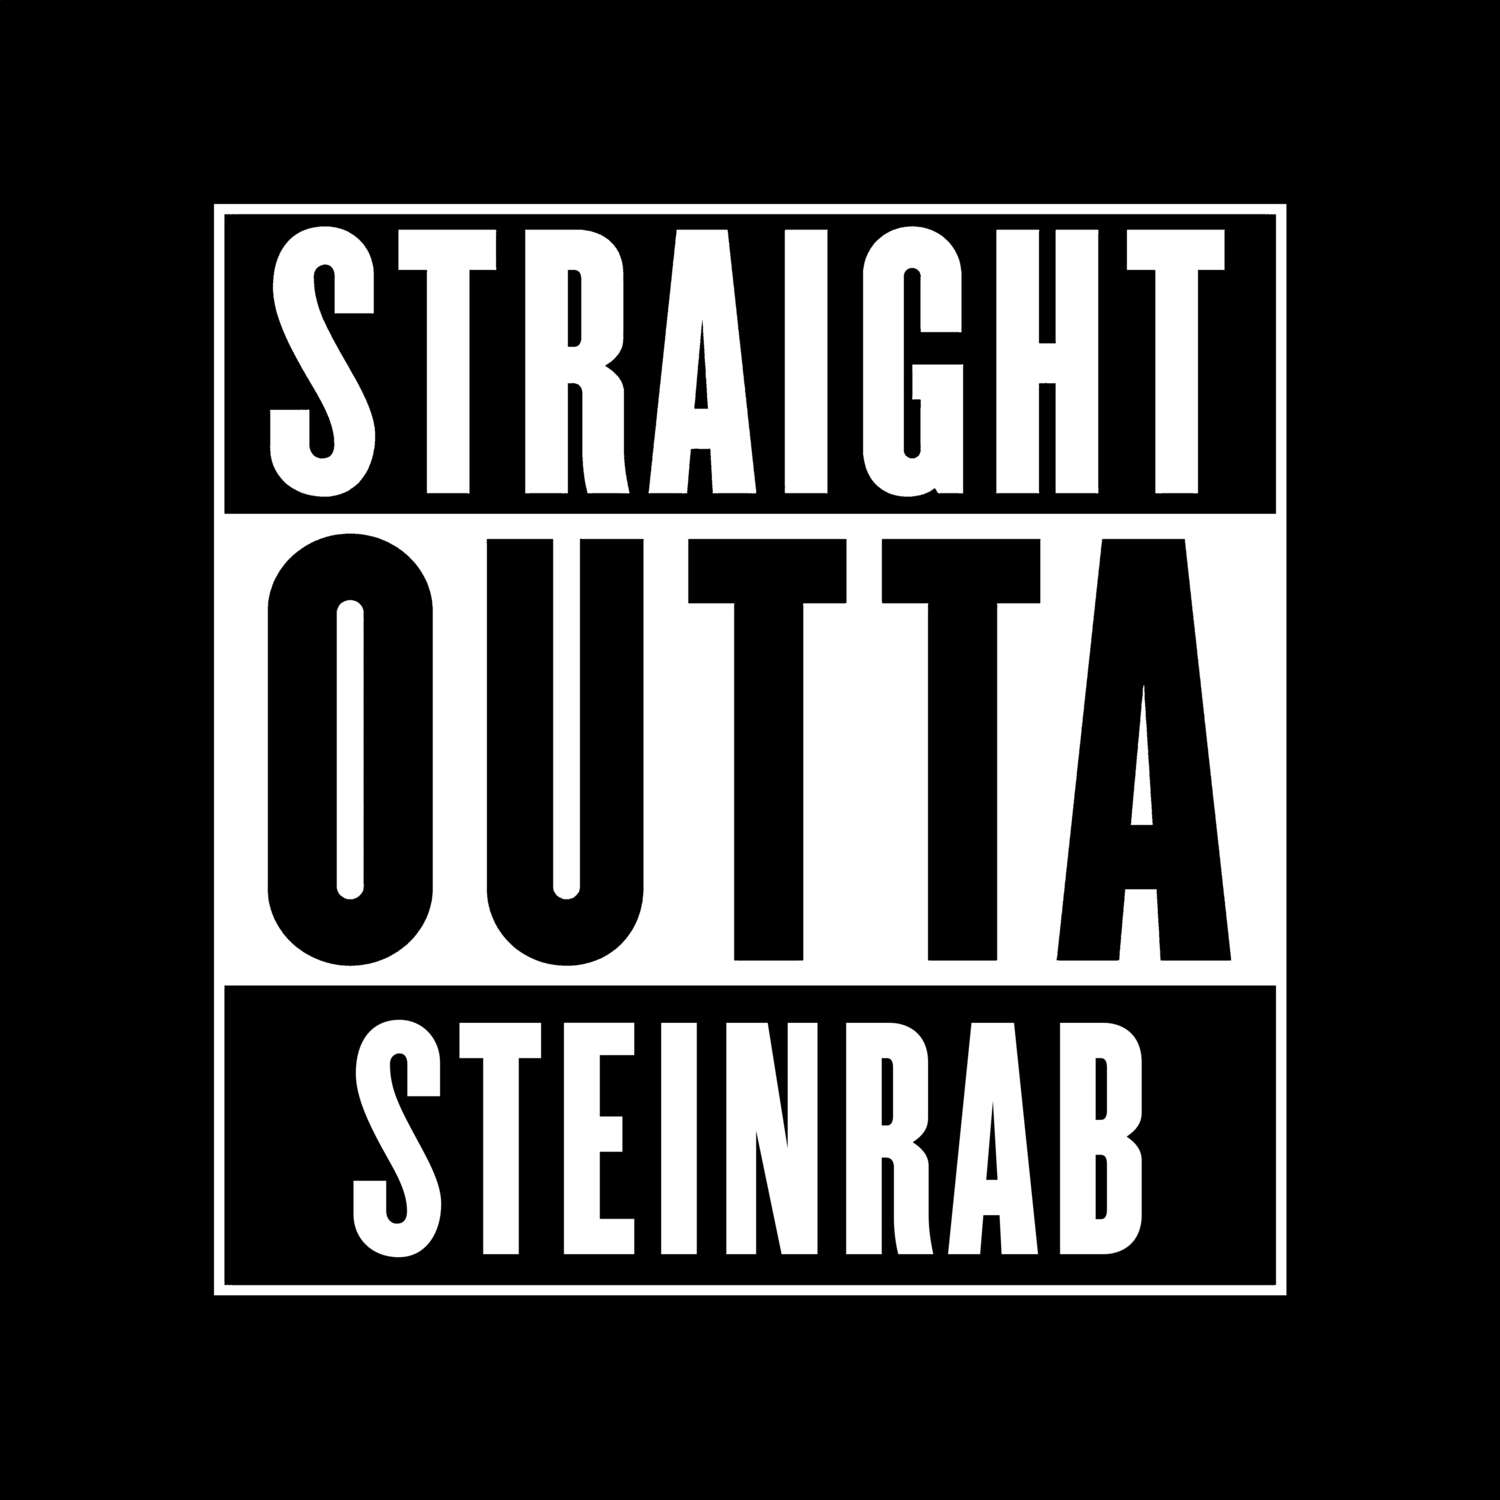 Steinrab T-Shirt »Straight Outta«